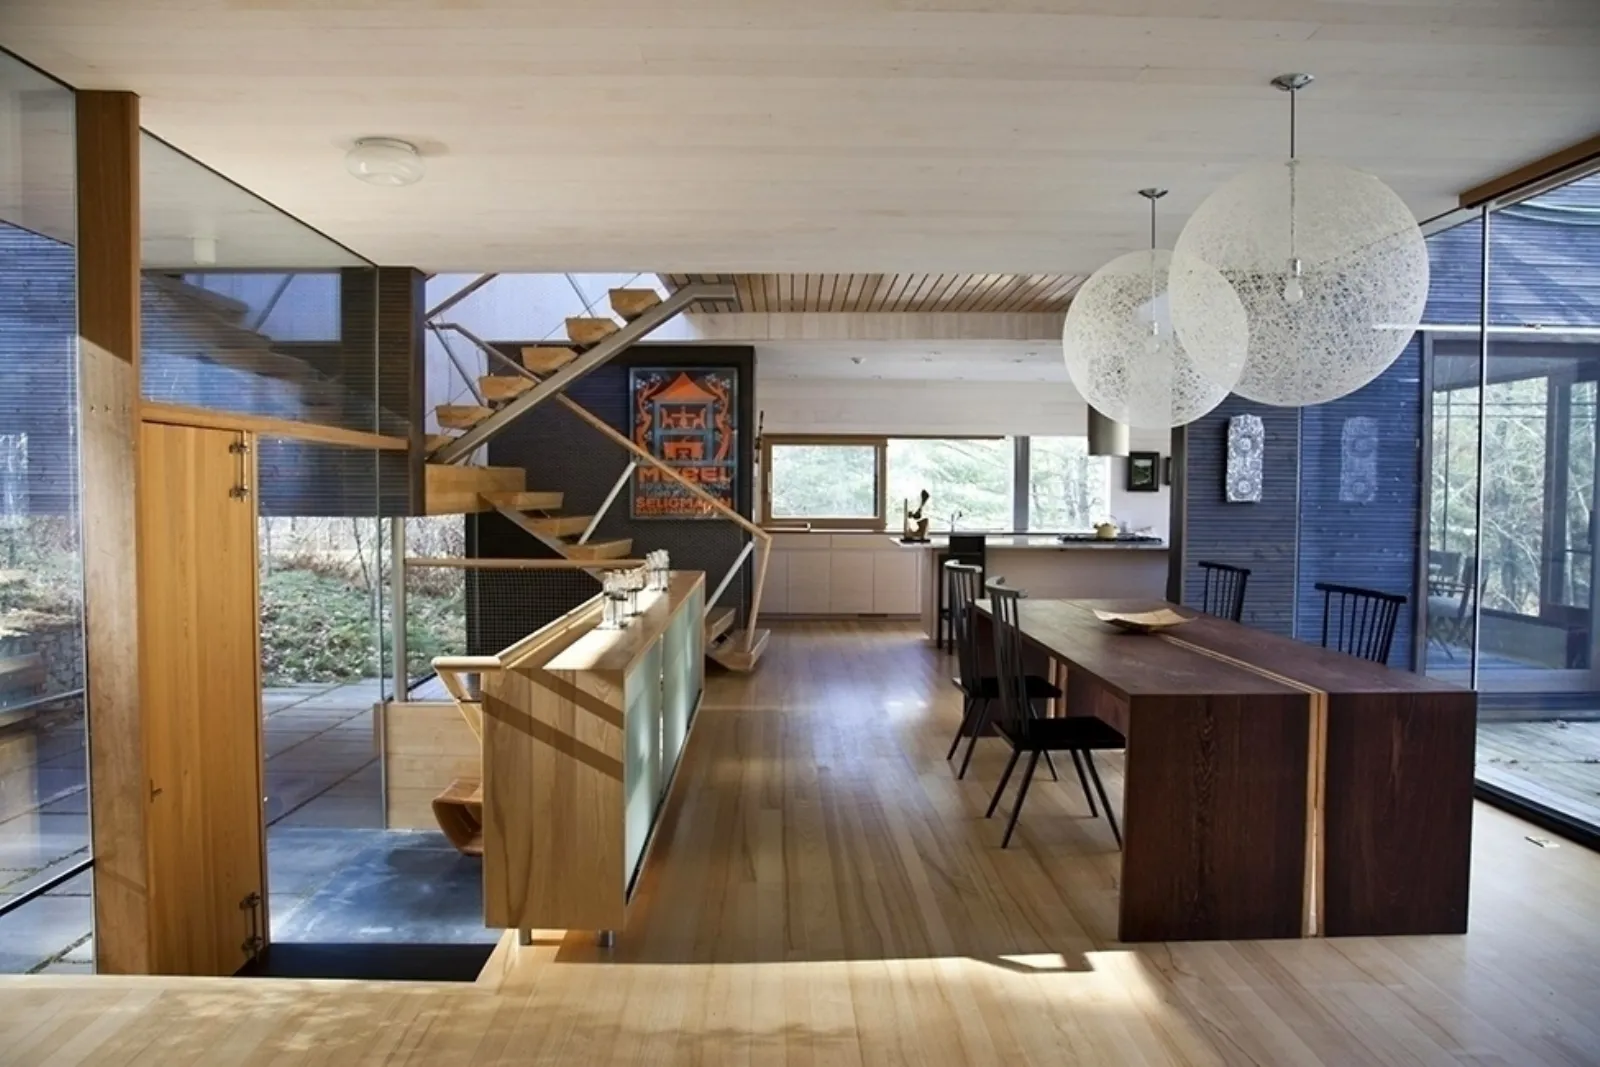 Casa moderna interni di stile progettazione casa for Foto case arredate moderne